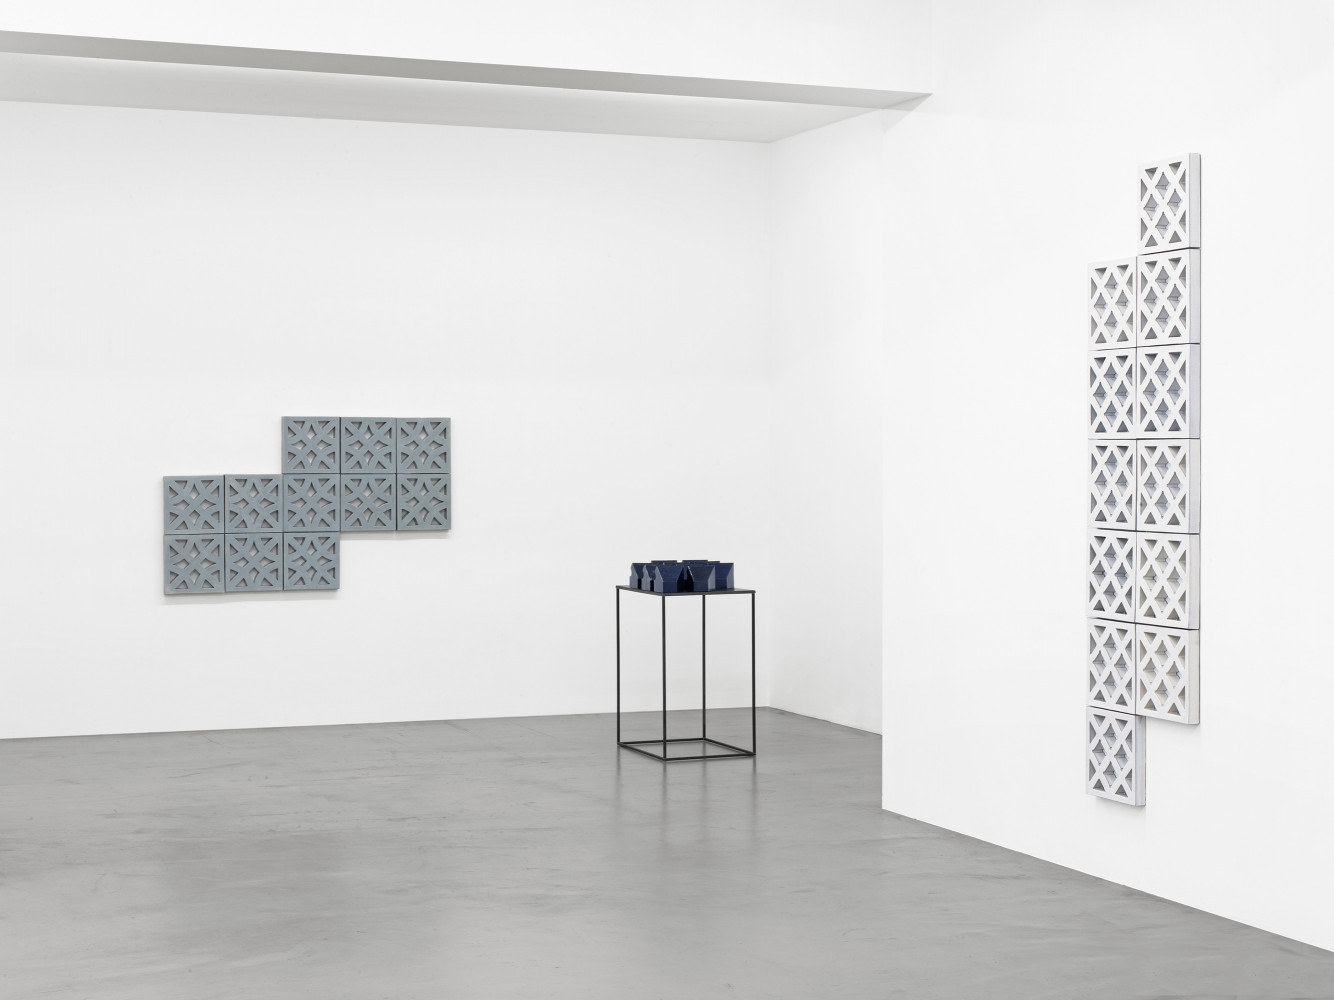 Bettina Pousttchi, ‘Ceramics’, Installationsansicht, Buchmann Galerie, 2016